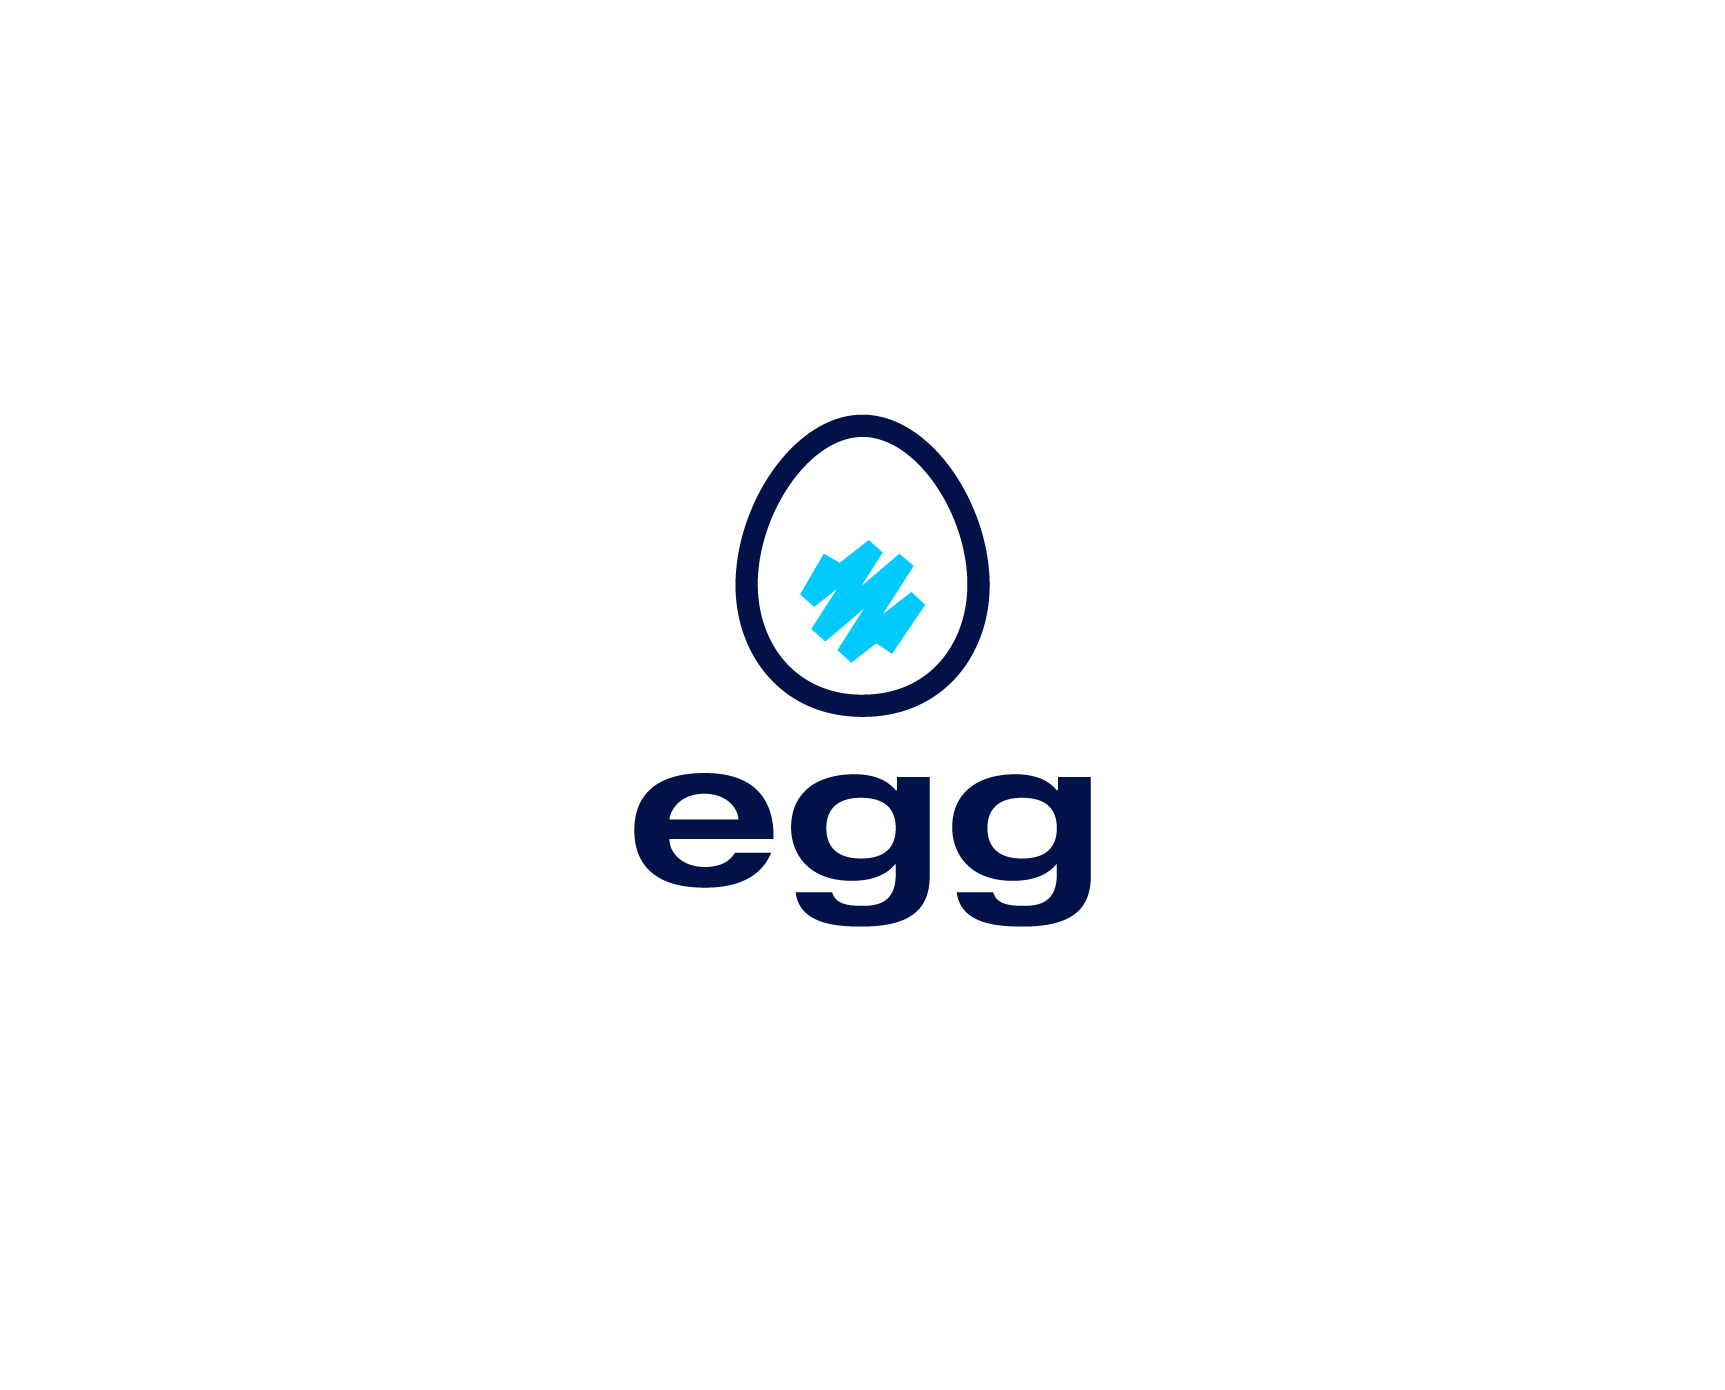 egg branding logo kommigraphics